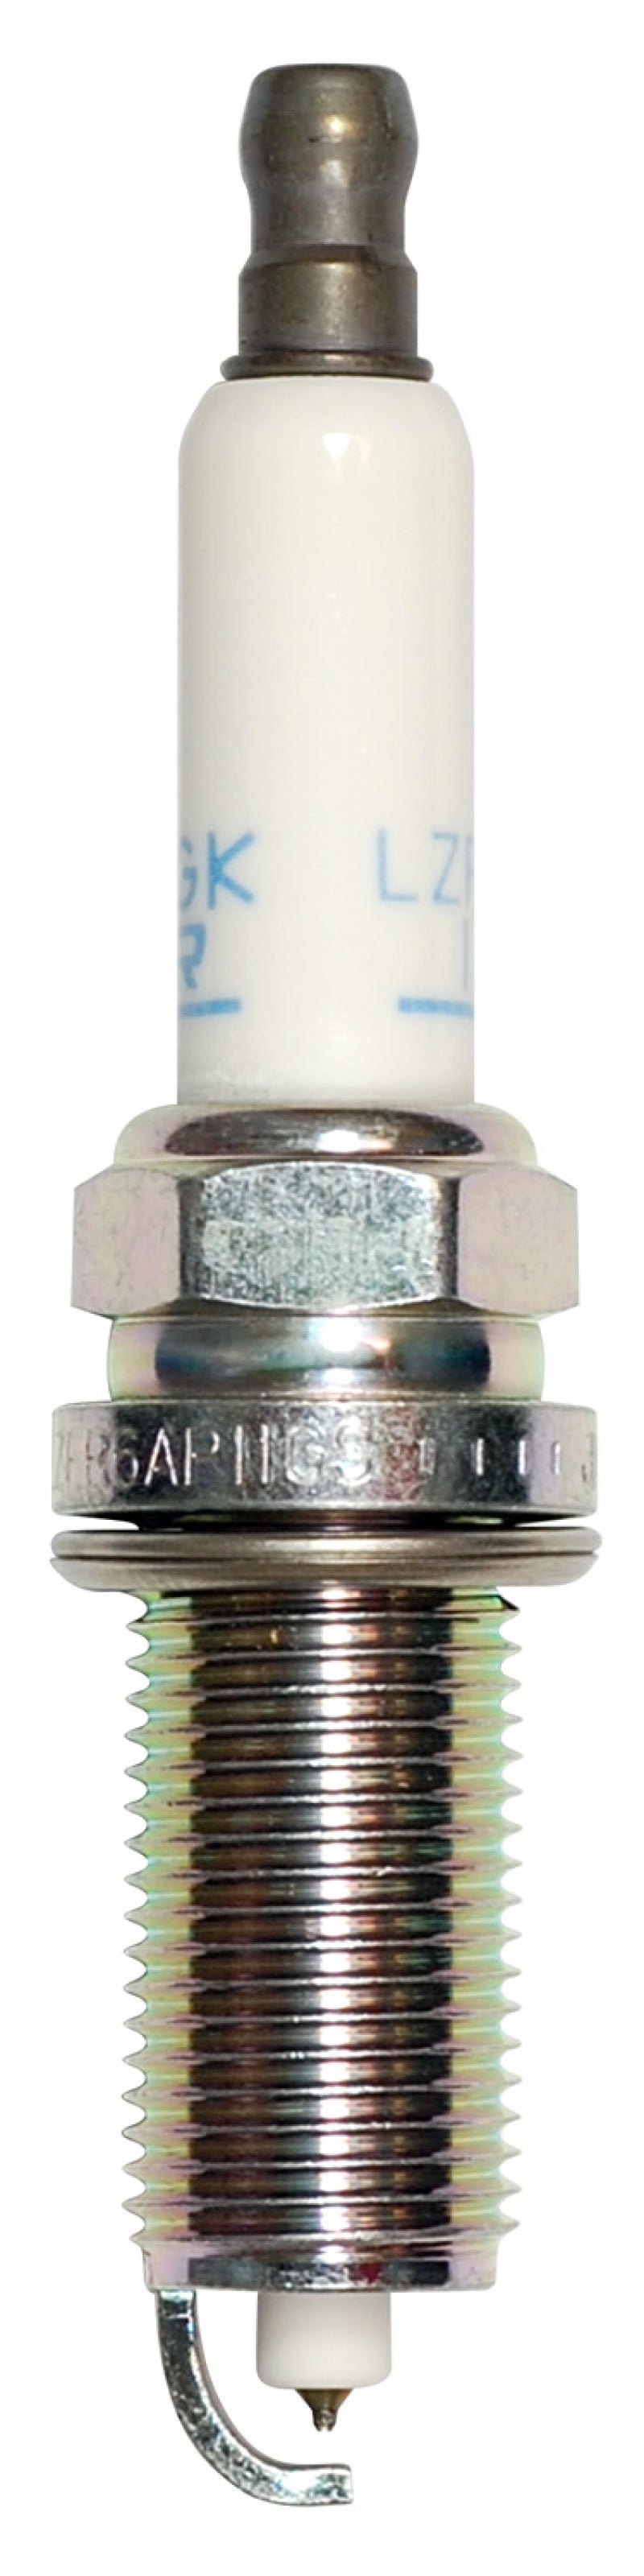 NGK Laser Platinum Spark Plug Box of 4 (LZFR6AP11GS)